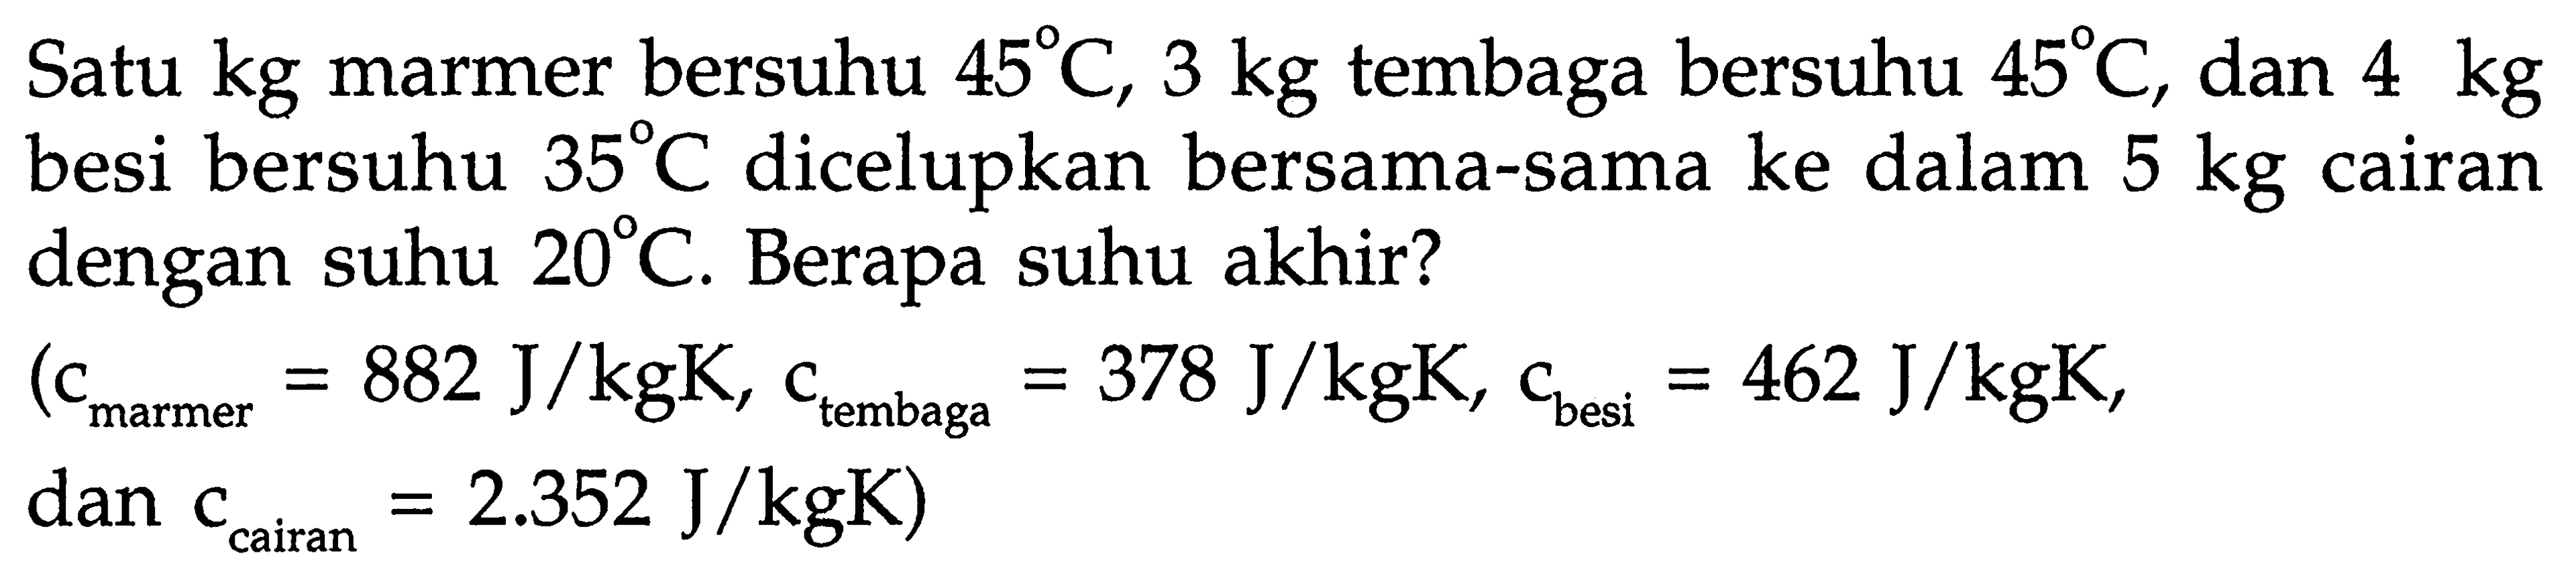 Satu kg marmer bersuhu 45 C, 3 kg tembaga bersuhu 45 C, dan 4 kg besi bersuhu 35 C dicelupkan bersama-sama ke dalam 5 kg cairan dengan suhu 20 C. Berapa suhu akhir? 
(c(marmer) = 882 J/kgK, c(tembaga) = 378 J/kgK, c(besi) = 462 J/kgK, dan c(cairan) = 2.352 J/kgK)